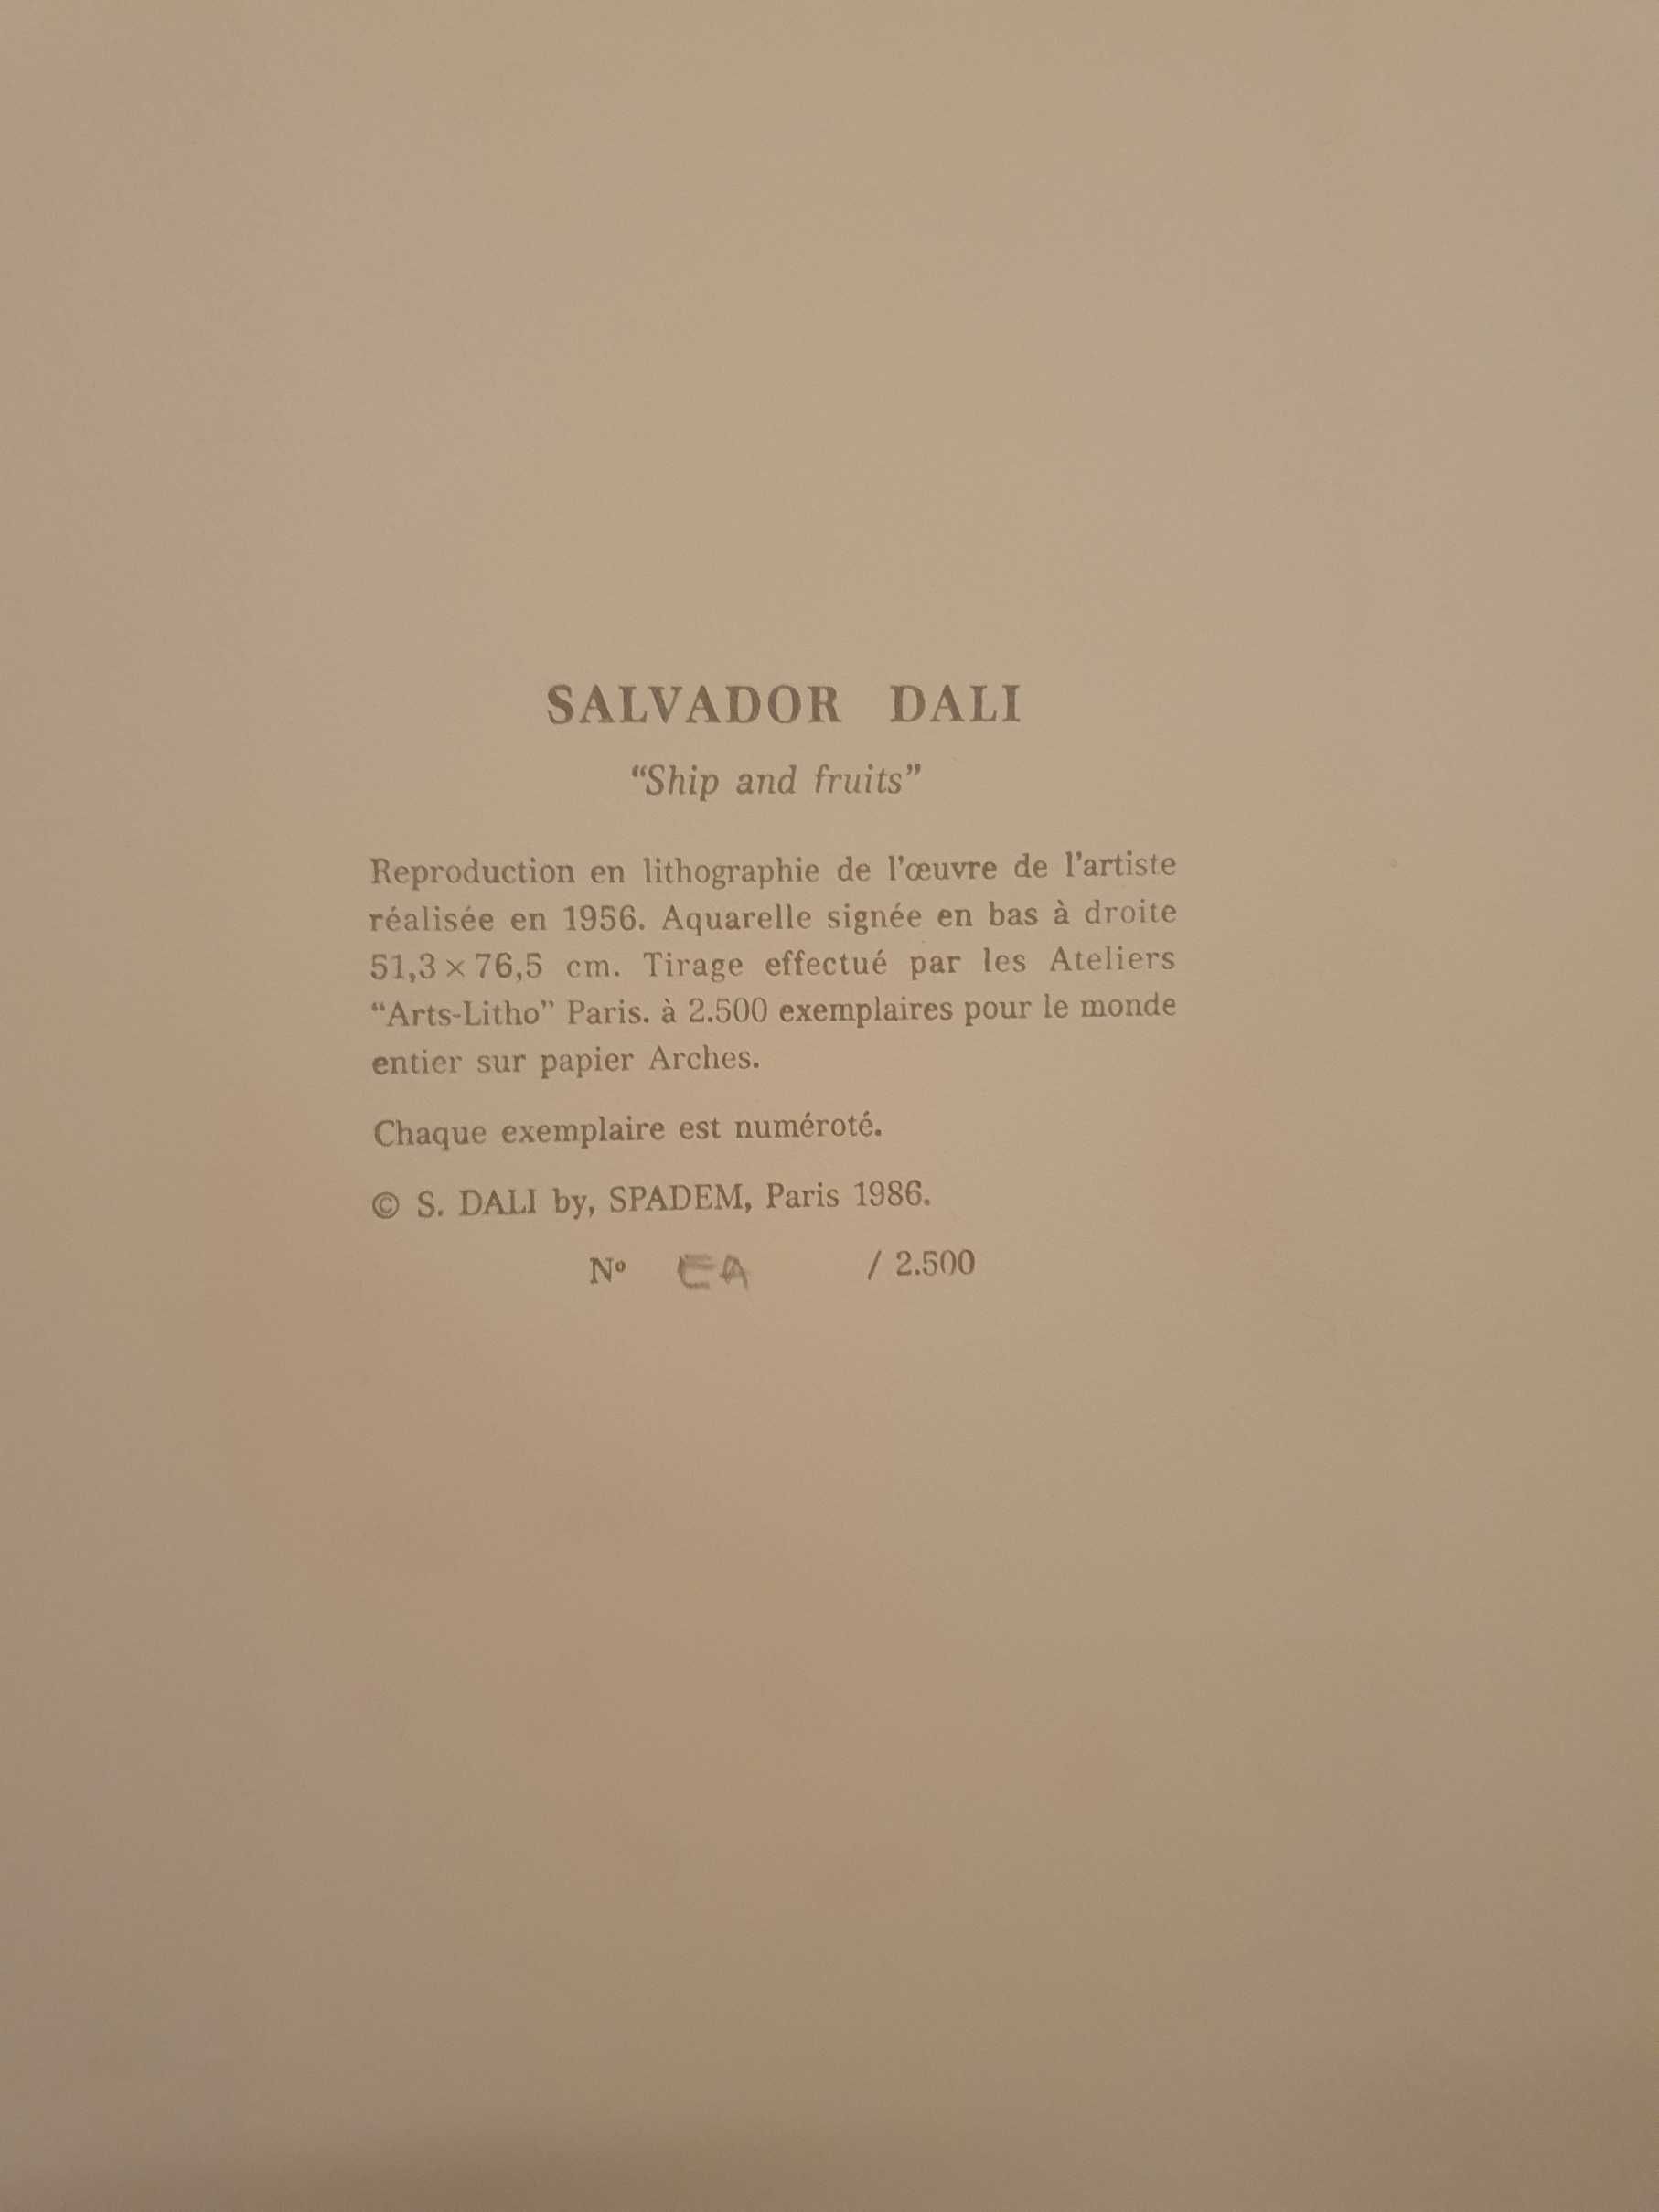 Ñavios e Frutos de Salvador Dali